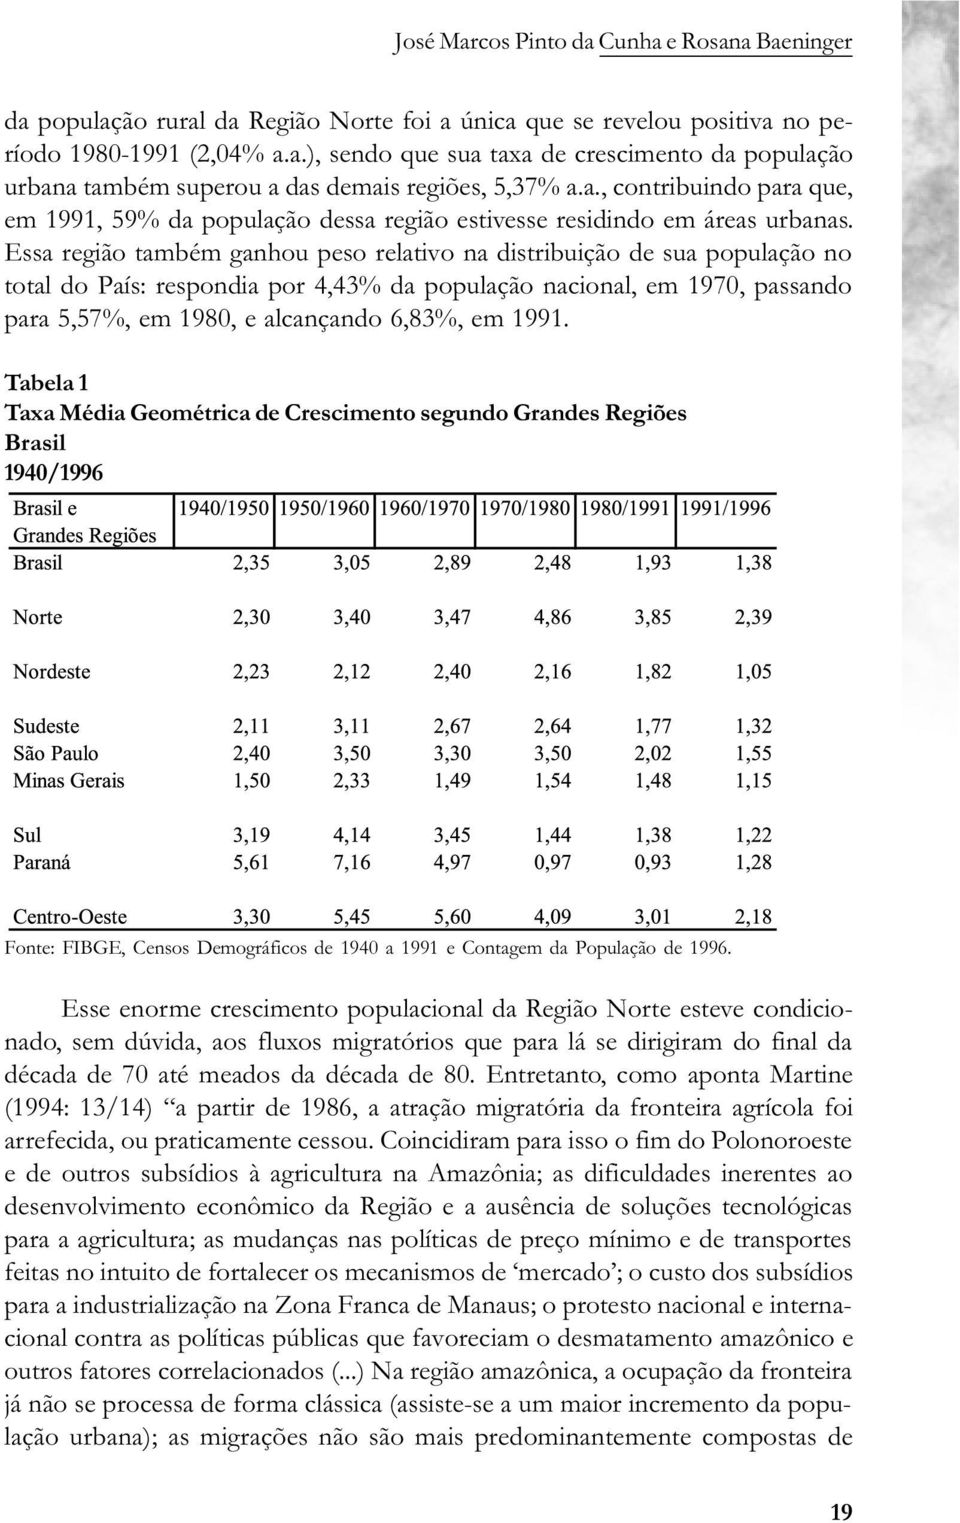 Essa região também ganhou peso relativo na distribuição de sua população no total do País: respondia por 4,43% da população nacional, em 1970, passando para 5,57%, em 1980, e alcançando 6,83%, em